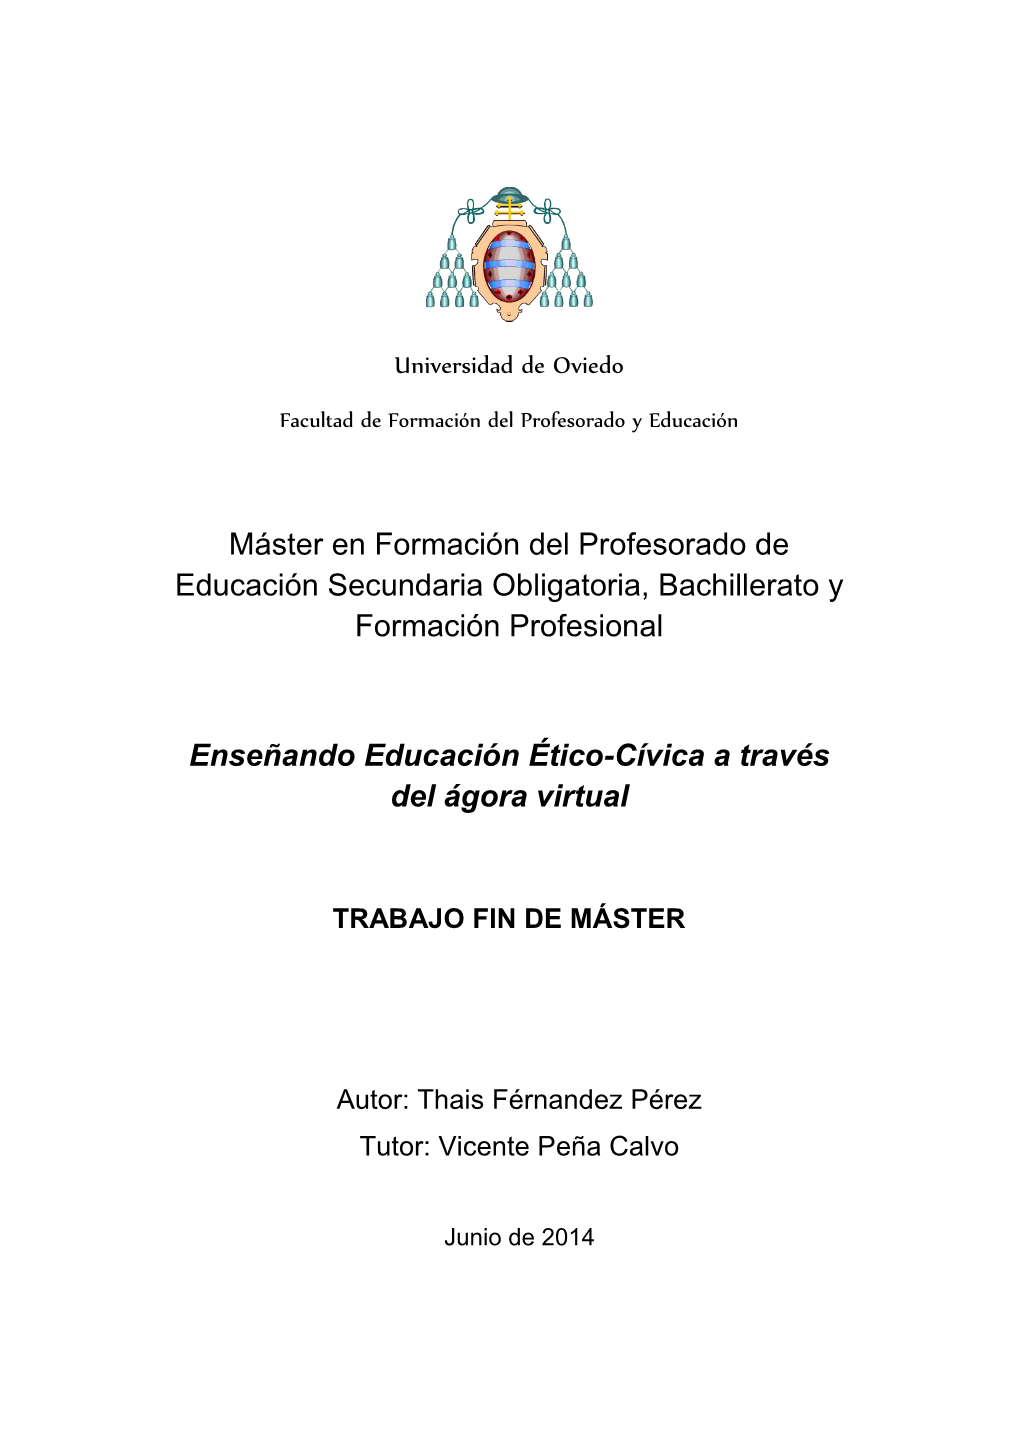 Máster En Formación Del Profesorado De Educación Secundaria Obligatoria, Bachillerato Y Formación Profesional